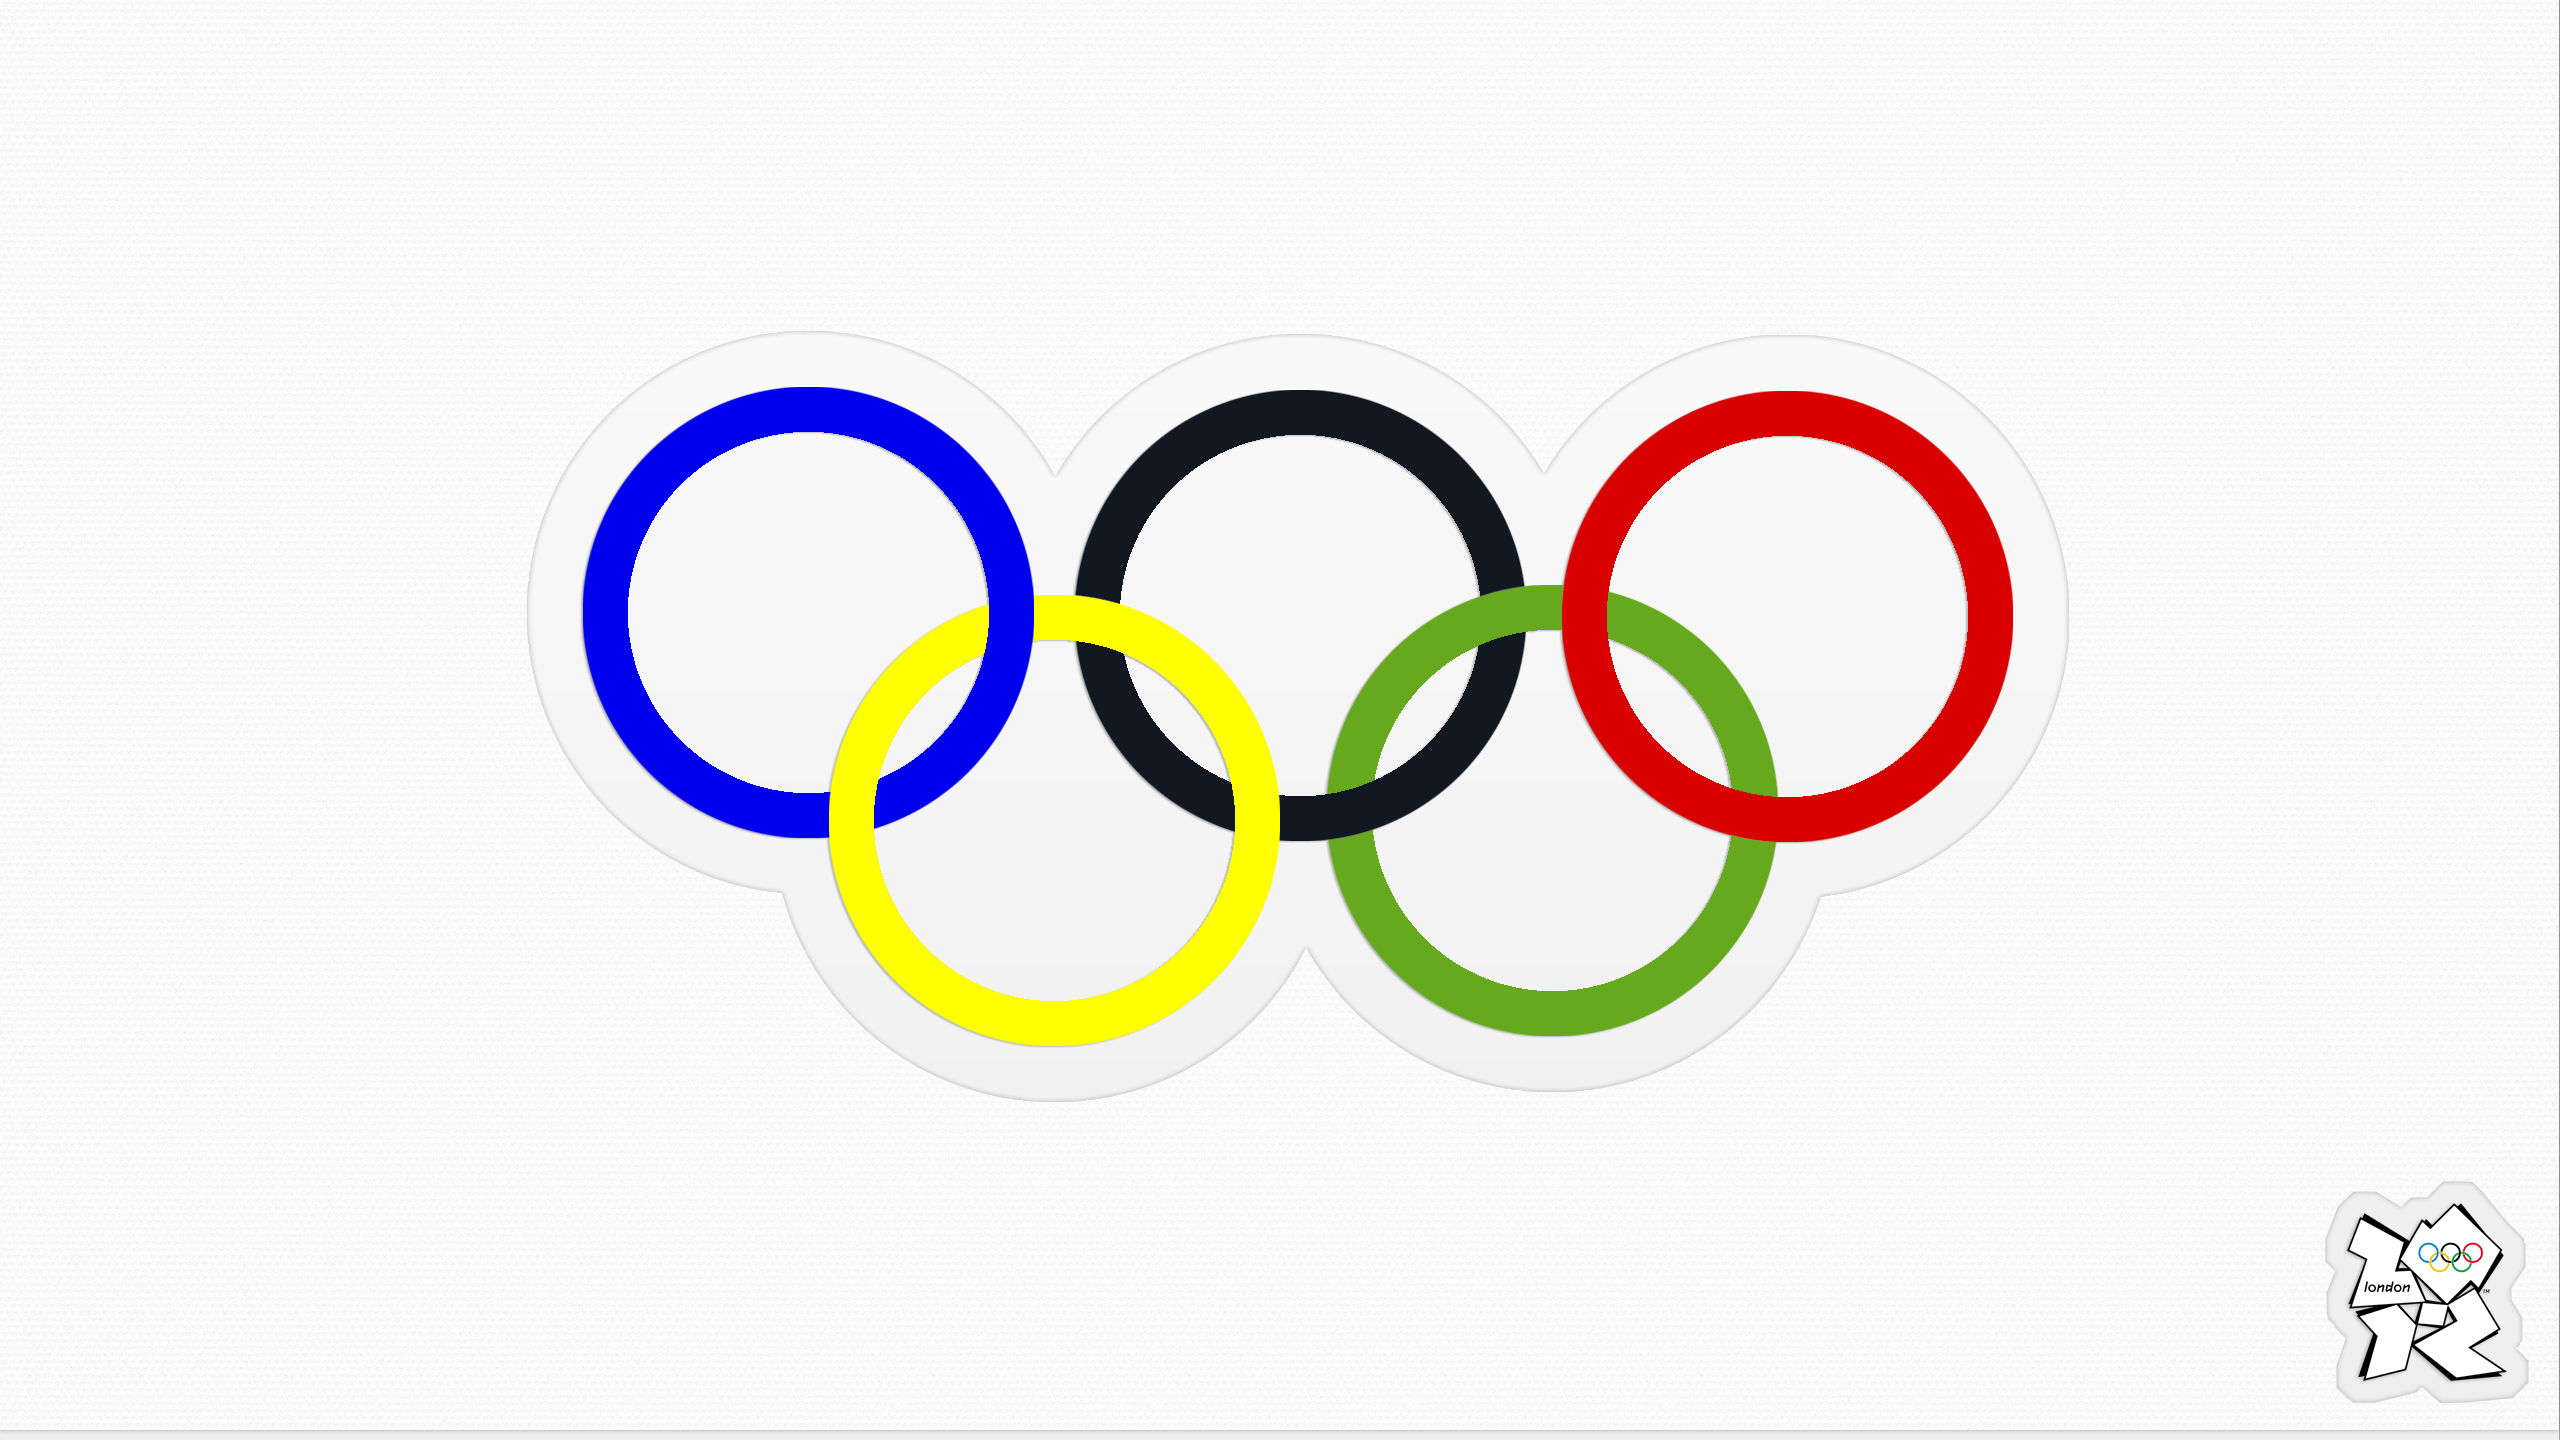 Флаг международного олимпийского комитета